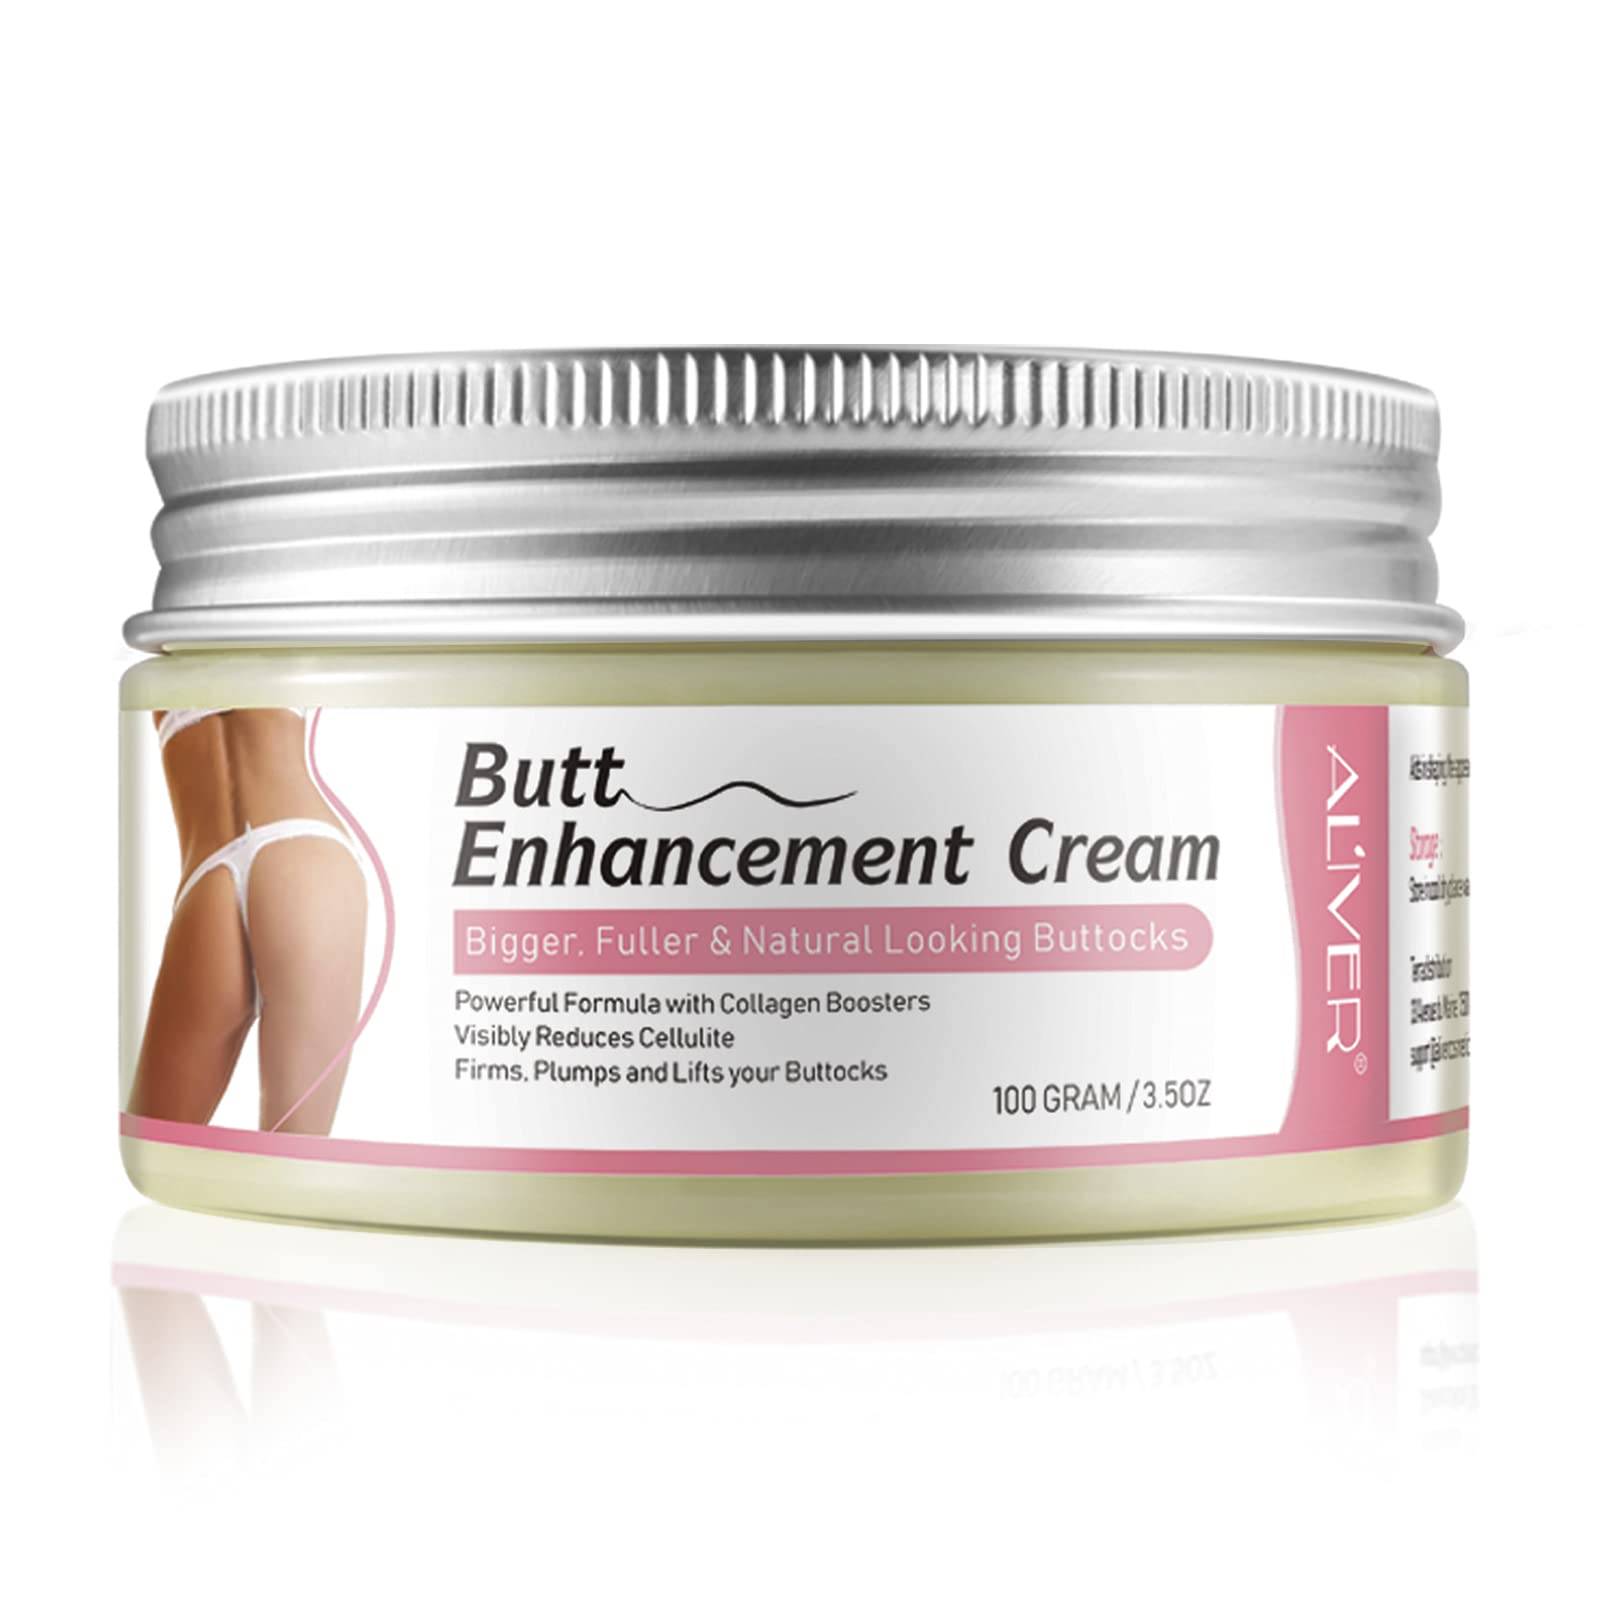 Butt Enhancement Cream Butt Lifting Cream for Bigger Butt Firming